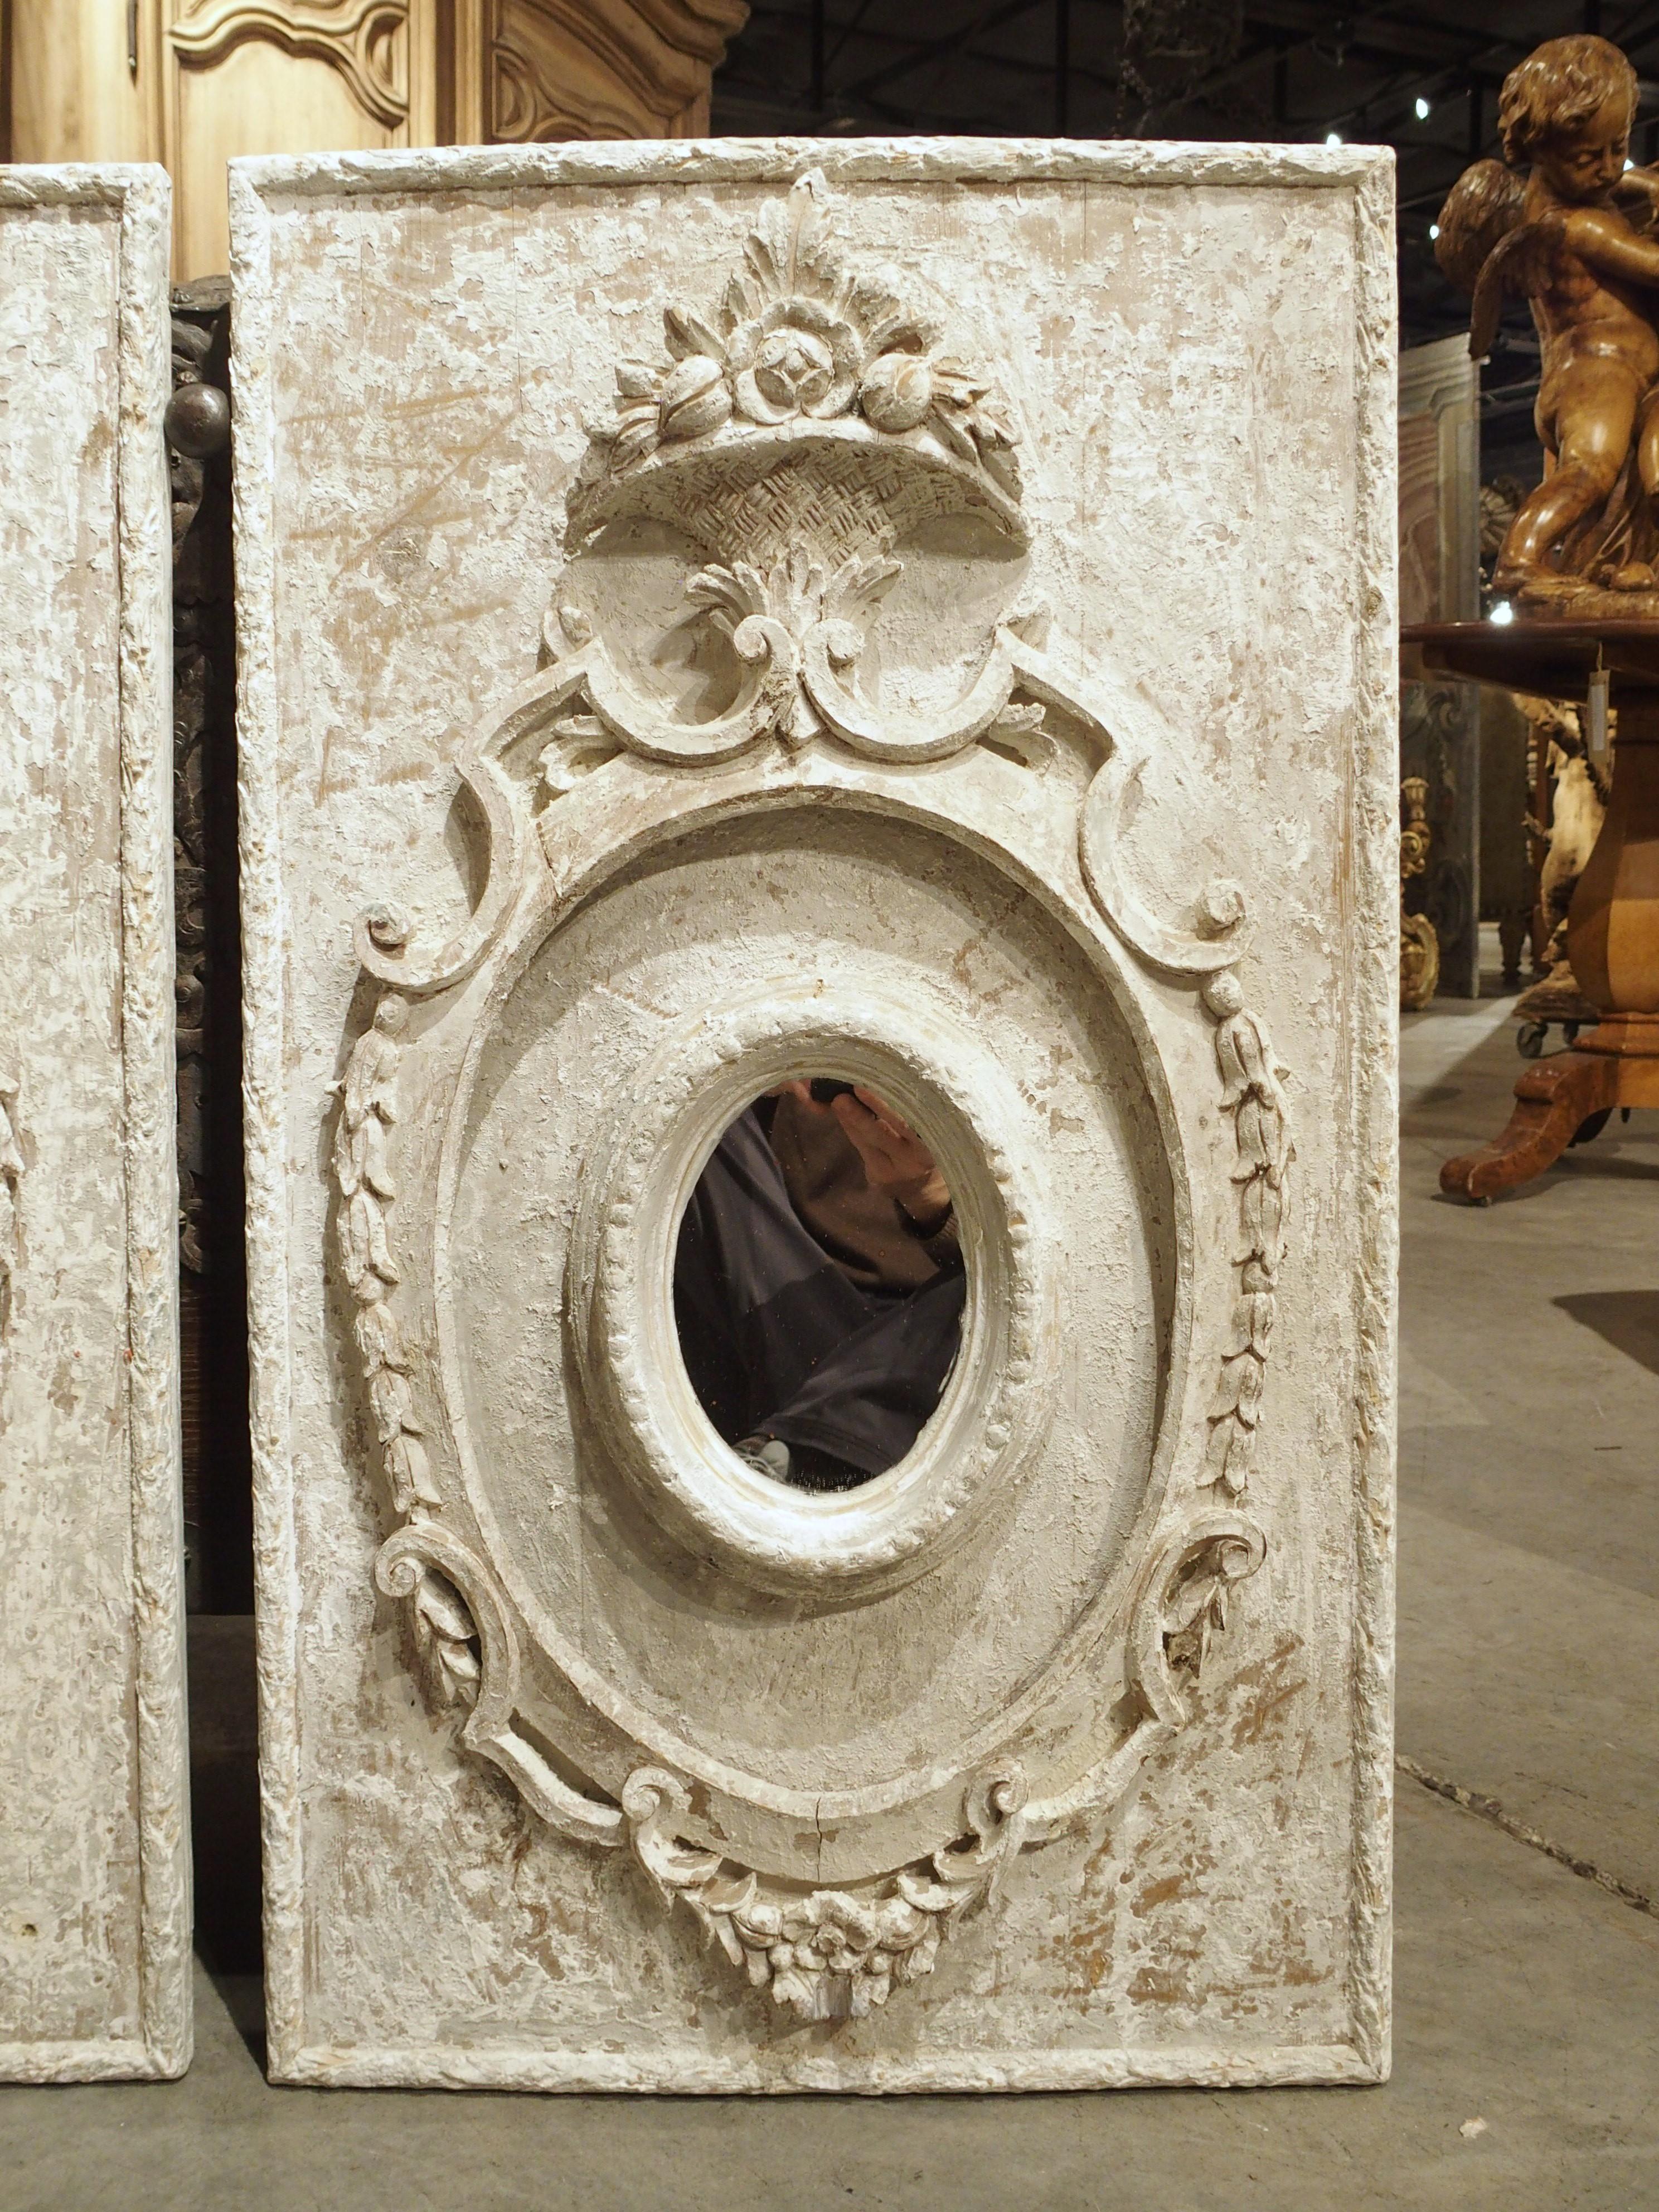 Diese bemalten Tafeln wurden in Florenz, Italien, in sorgfältiger Handarbeit hergestellt. Die Paneele wurden paketweise weiß gestrichen und mit einem 6 ¼ x 4 ½ großen ovalen Spiegel in einer offenen Kartusche versehen. Beide Spiegel sind von